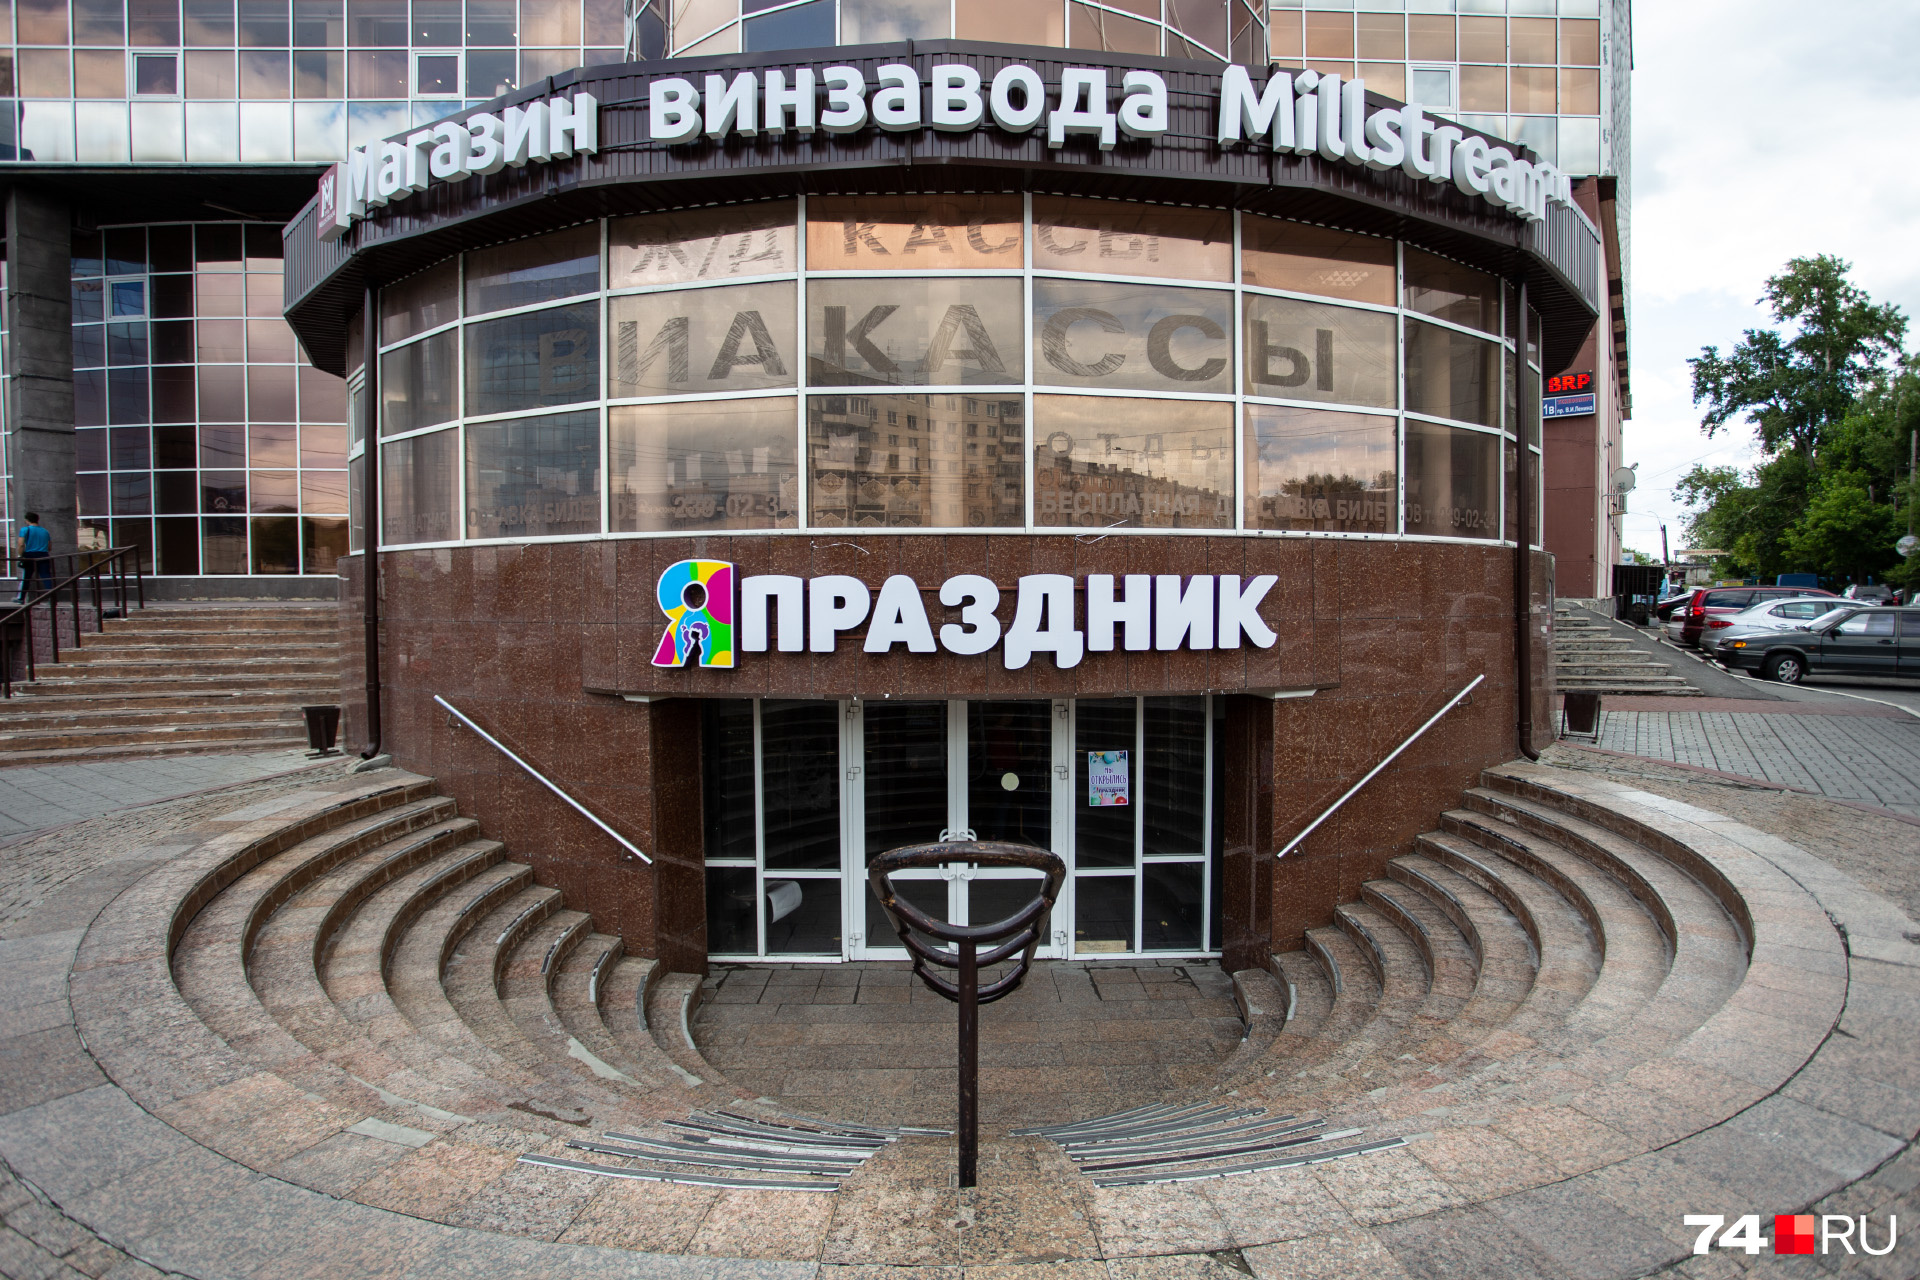 Торговые точки «Япраздник» сегодня остались только в Челябинске